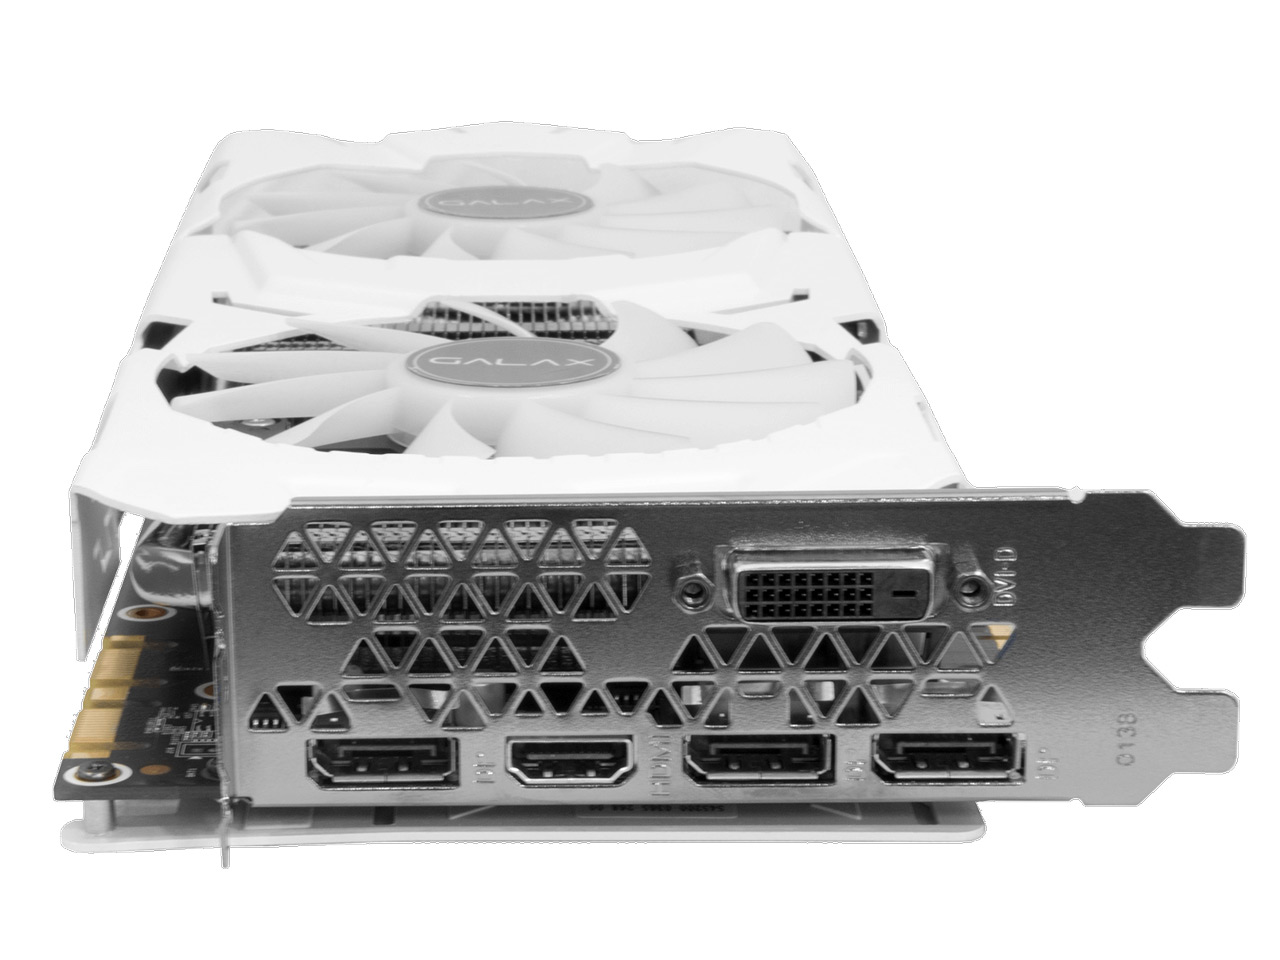 価格.com - 『本体 接続部分』 GALAKURO GK-GTX1070Ti-E8GB/WHITE [PCIExp 8GB] の製品画像